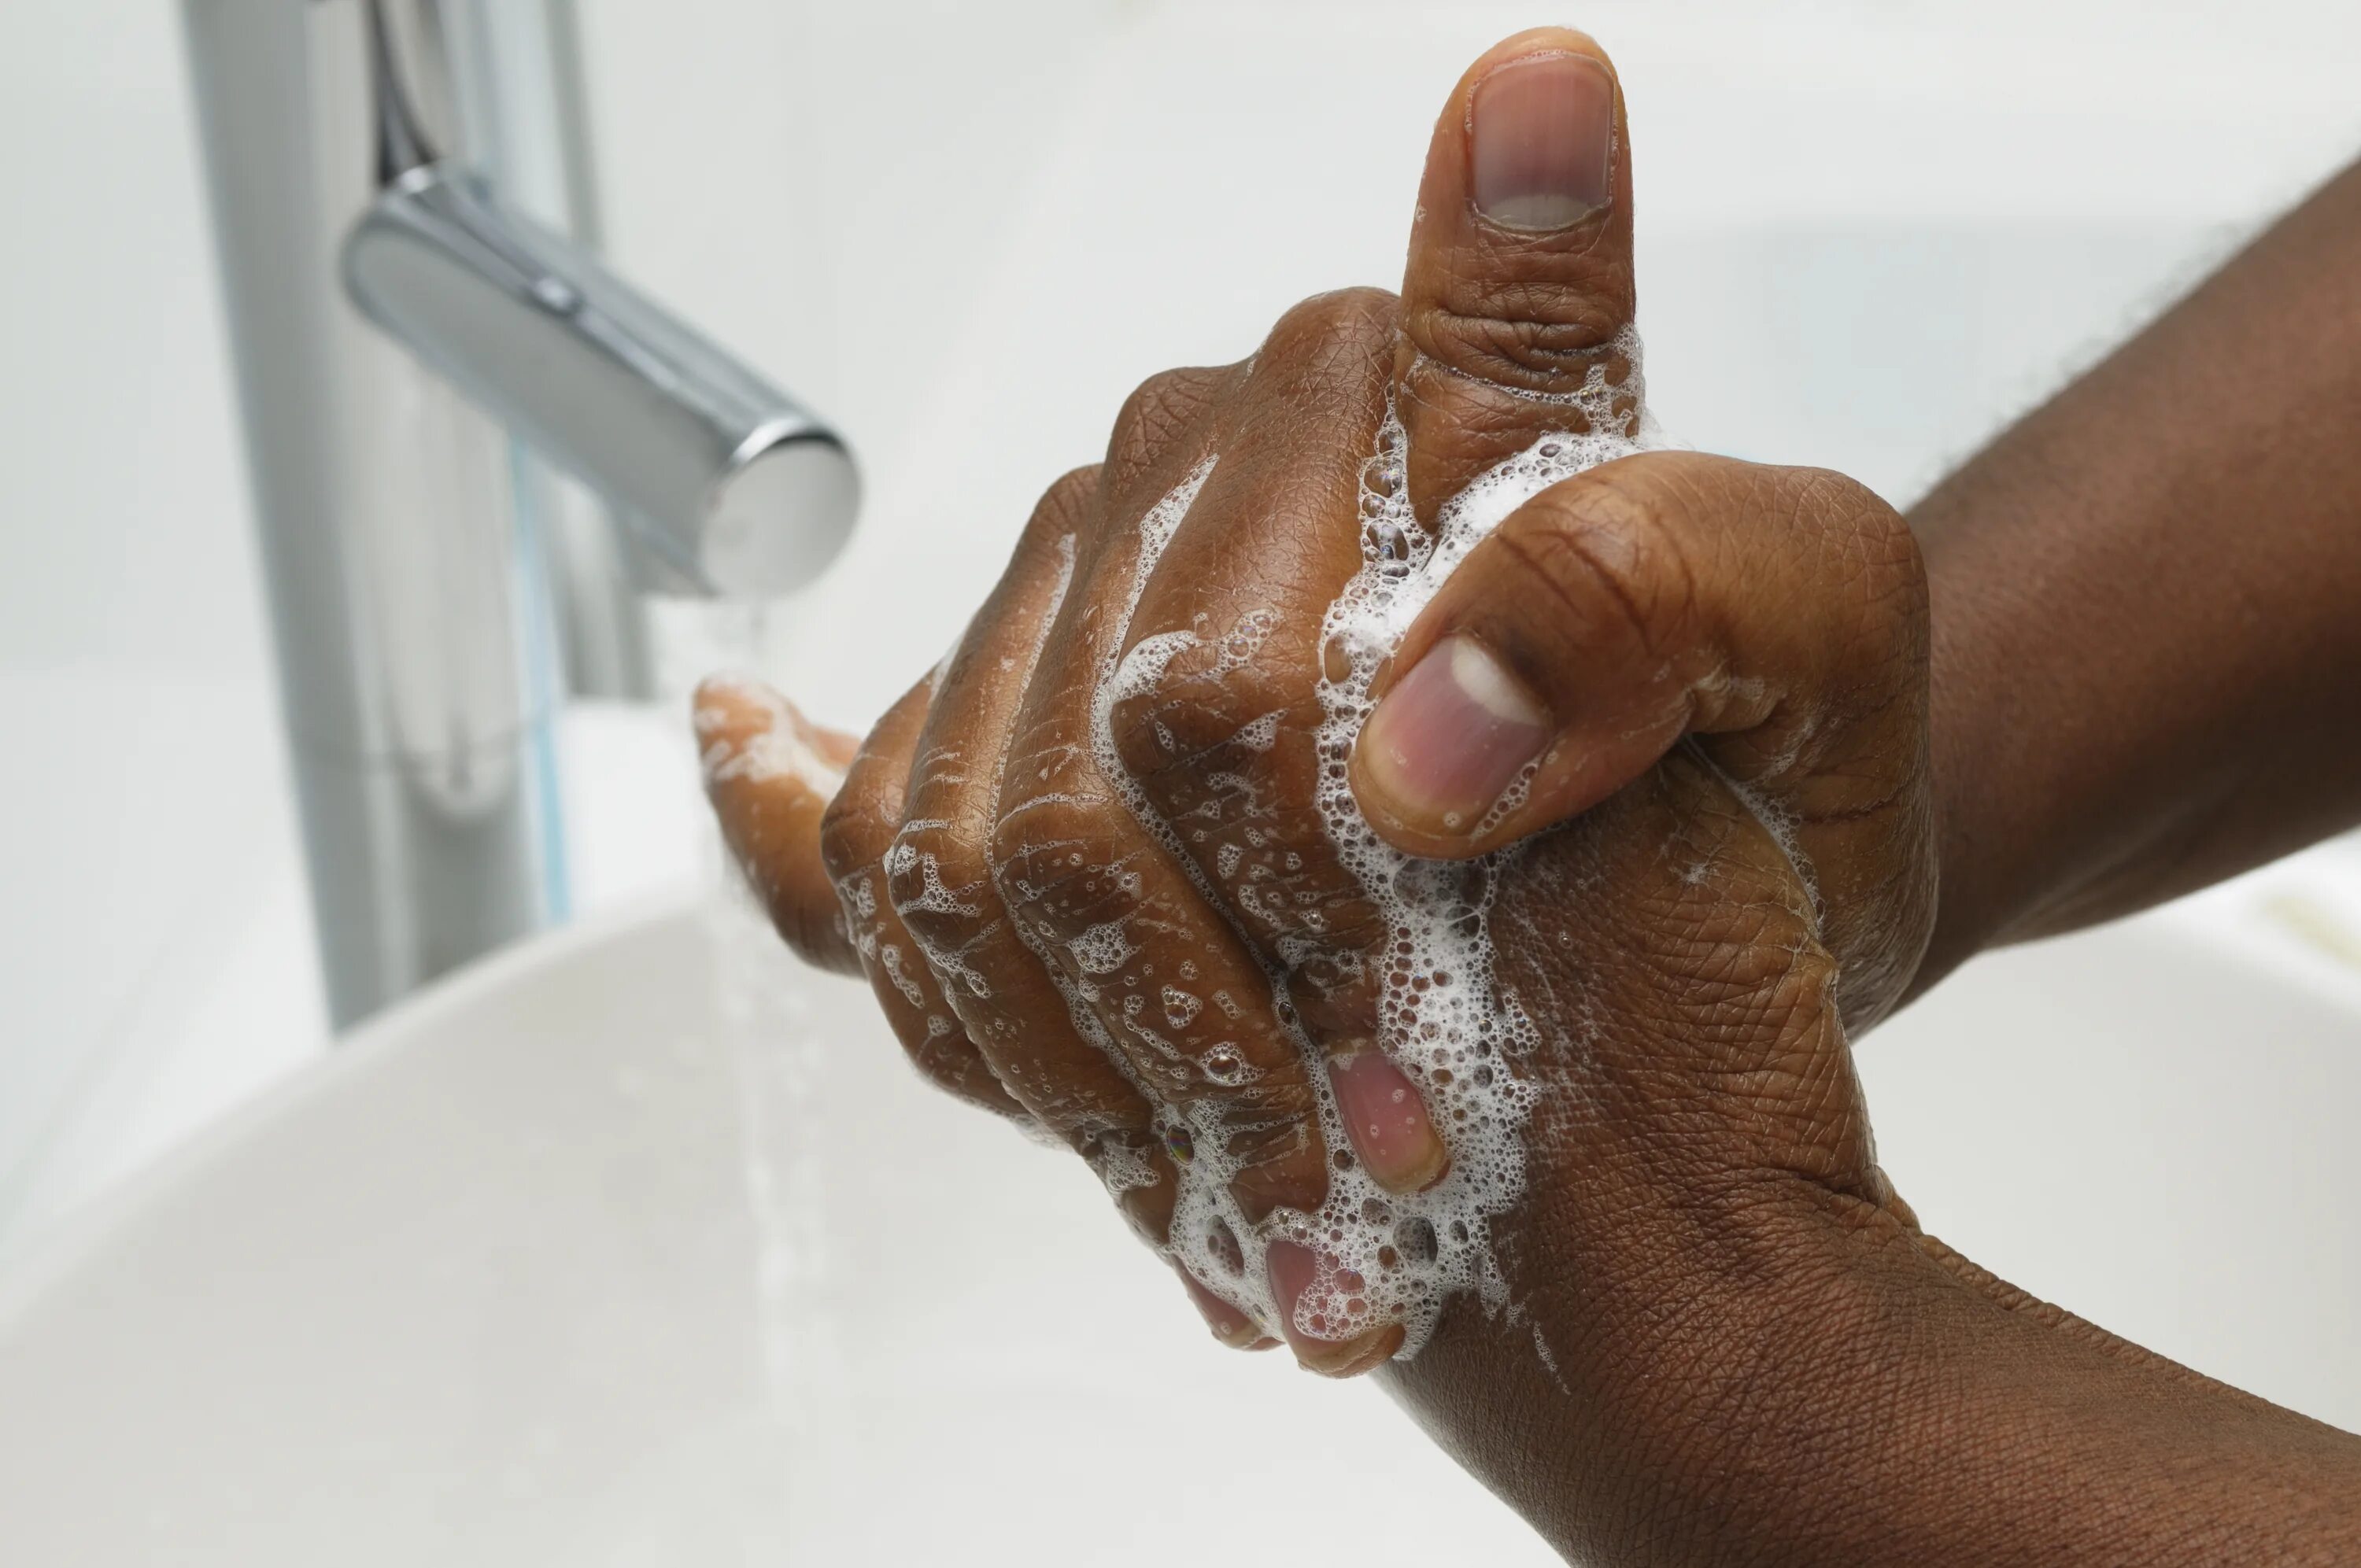 Мытье рук. Мыло для рук. Мыть руки. Умываю руки. Руки мыть руки ы